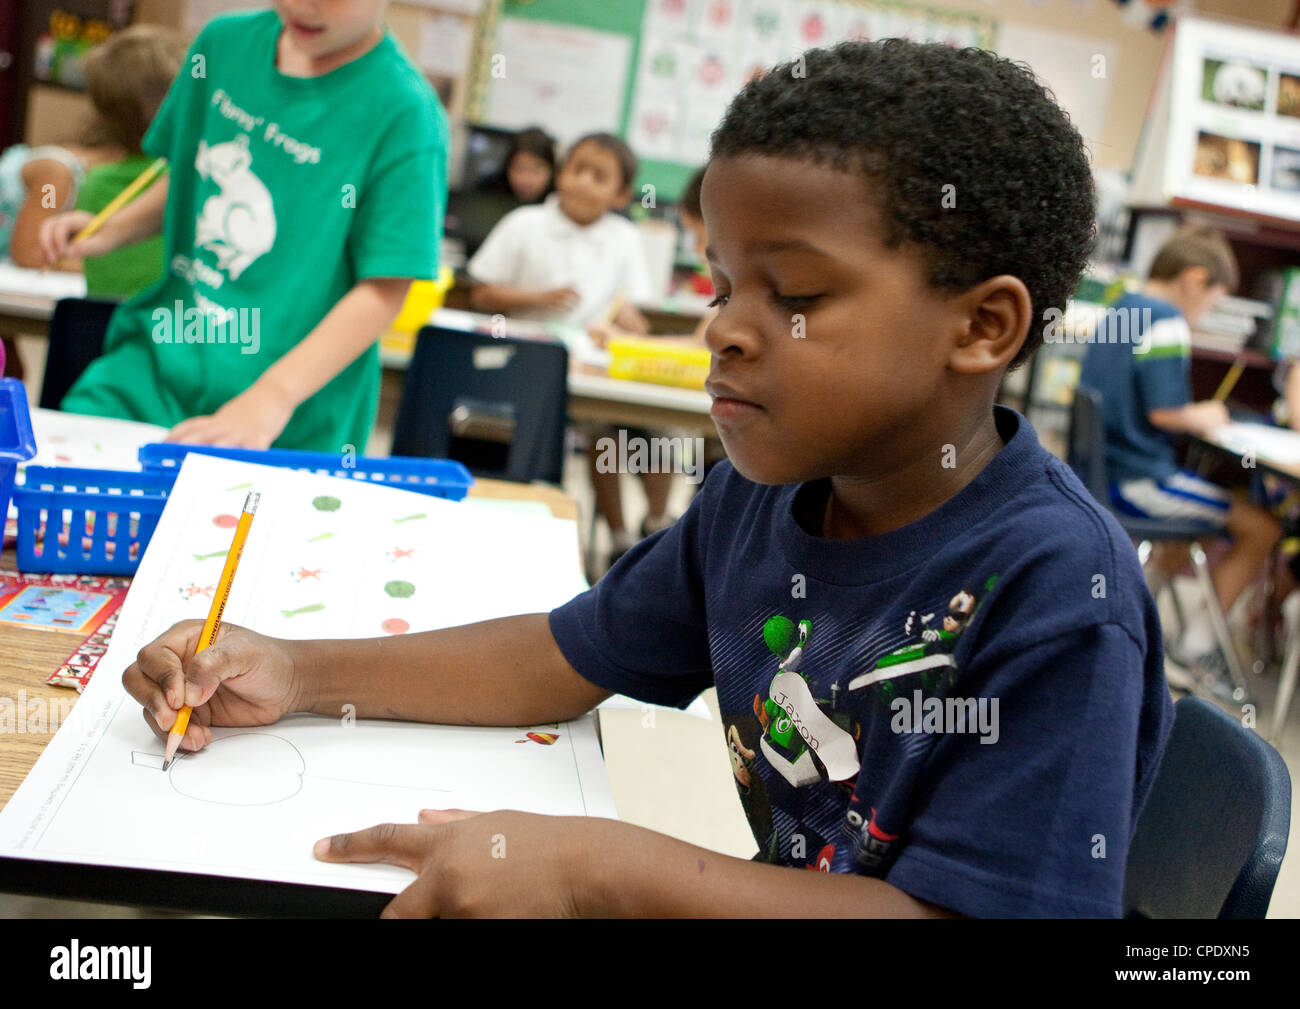 Les hommes afro-américains de la maternelle élève travaille à son bureau pendant la classe à l'école élémentaire publique du Texas Banque D'Images